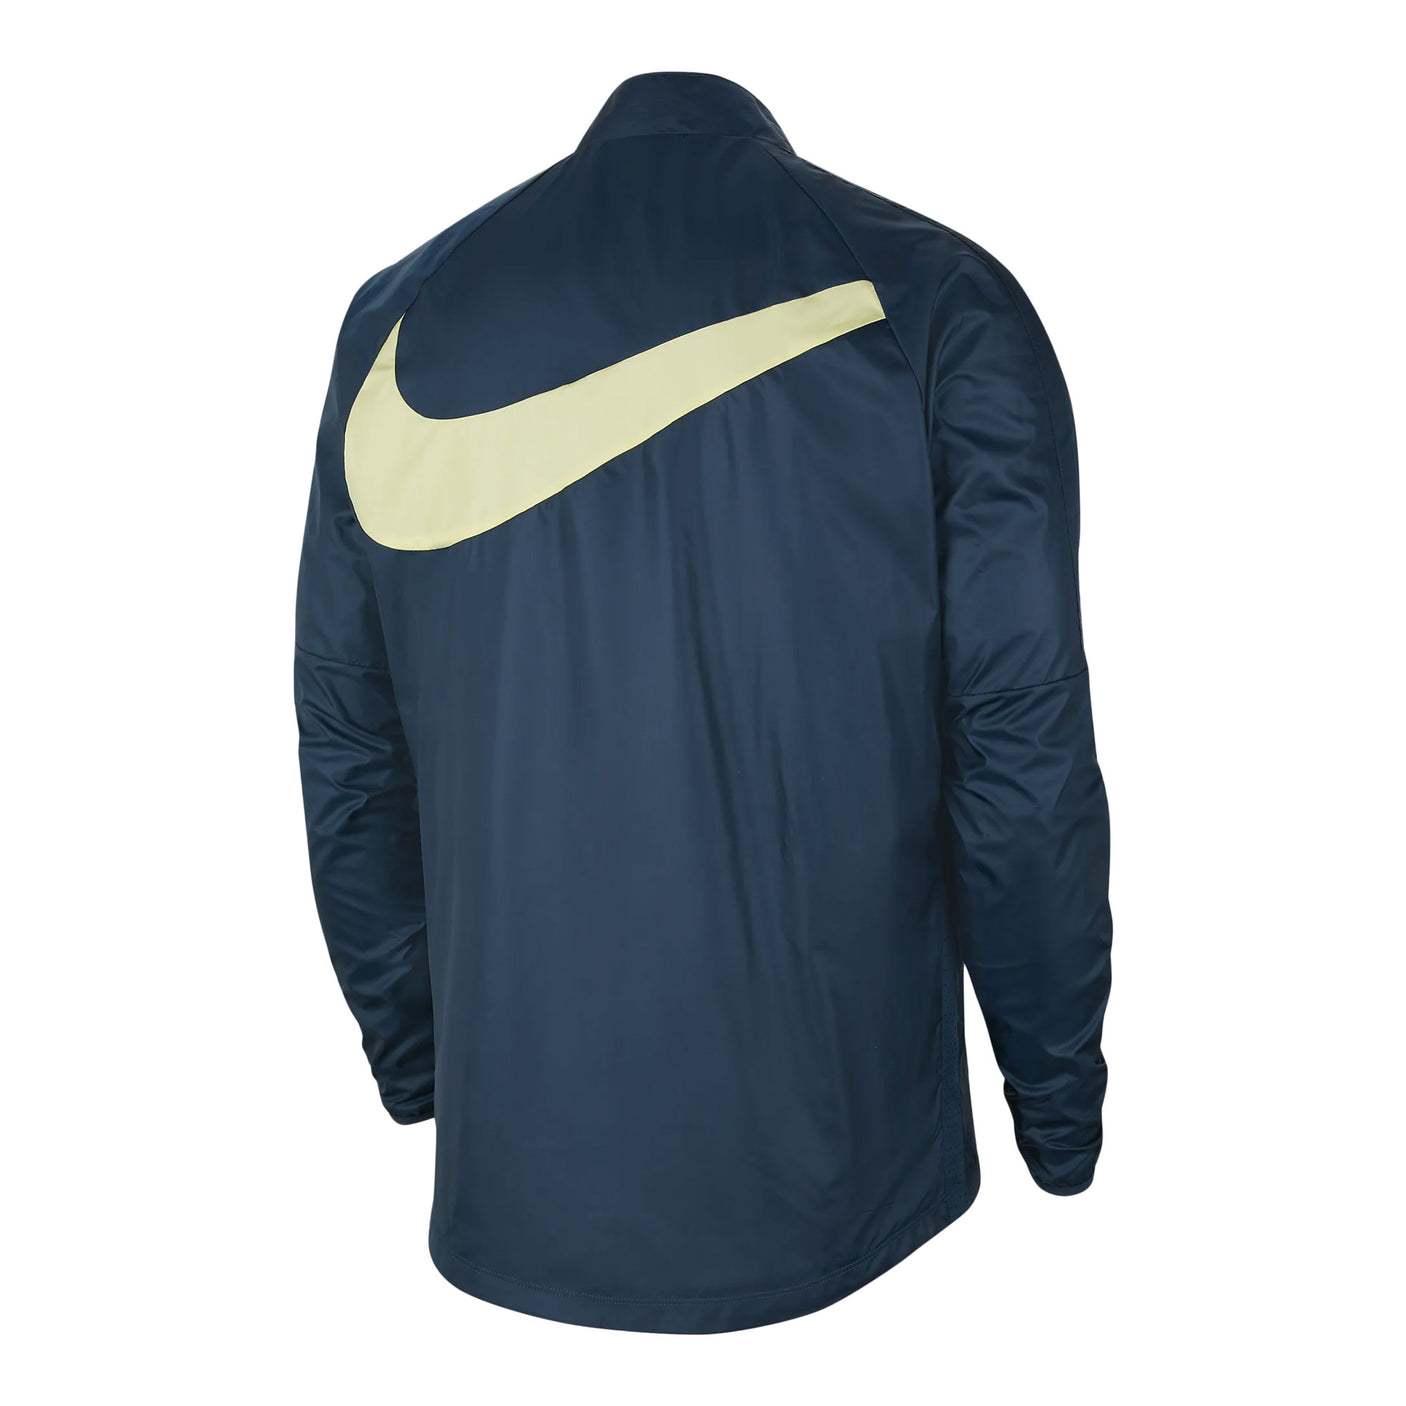 Nike Club America Repel AWF Jacket - Armory Navy/Lemon Chiffon - SoccerPro